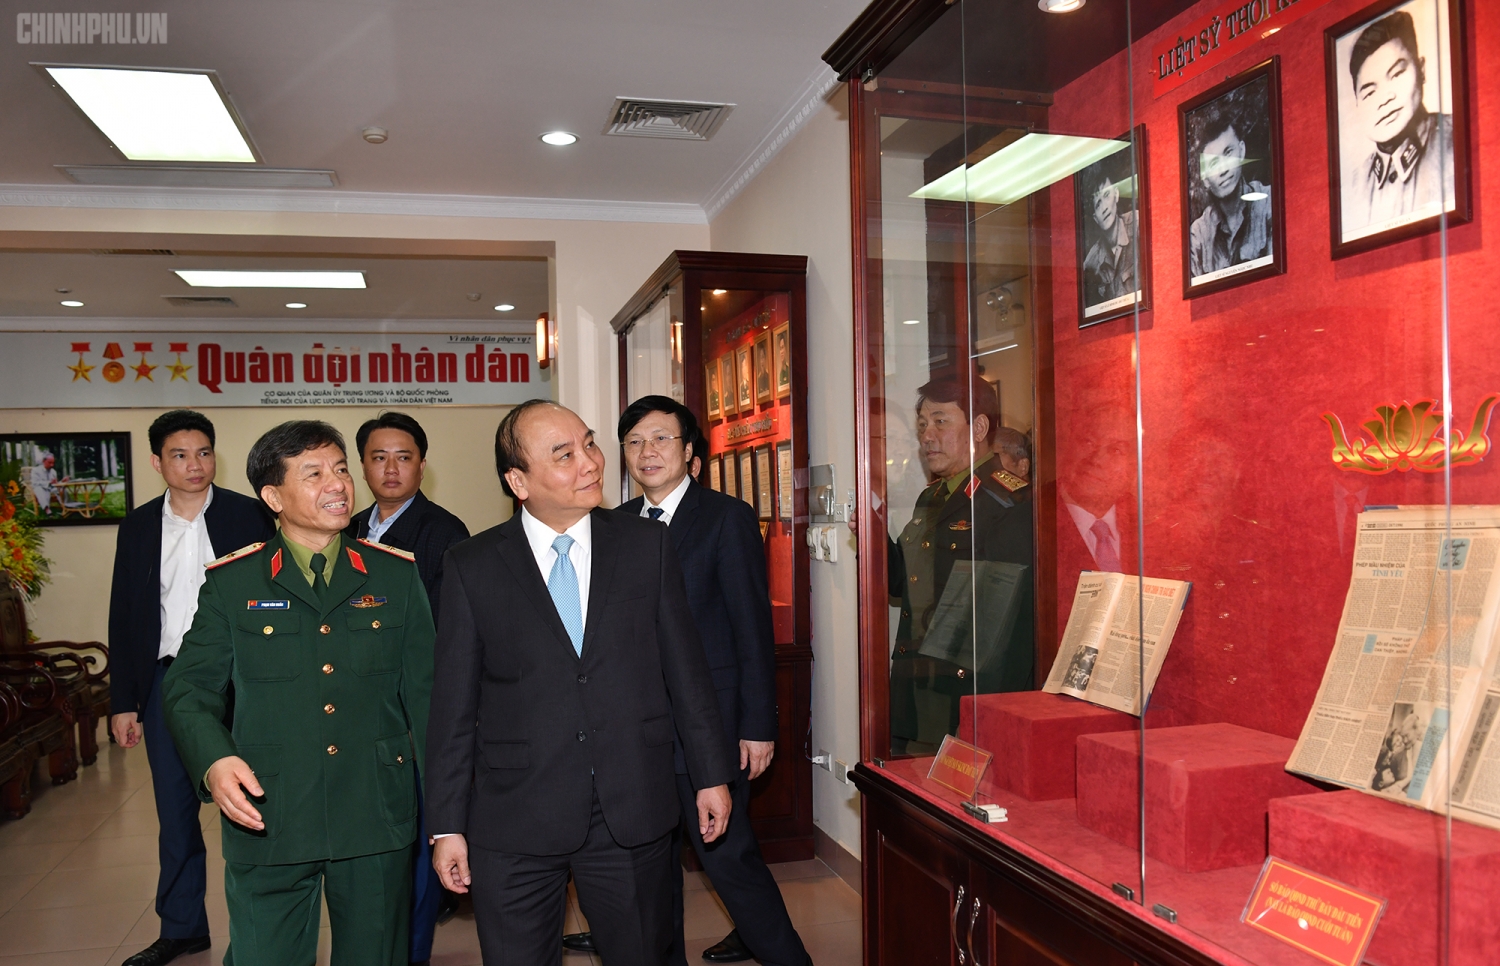 Thủ tướng thăm Báo Quân đội nhân dân